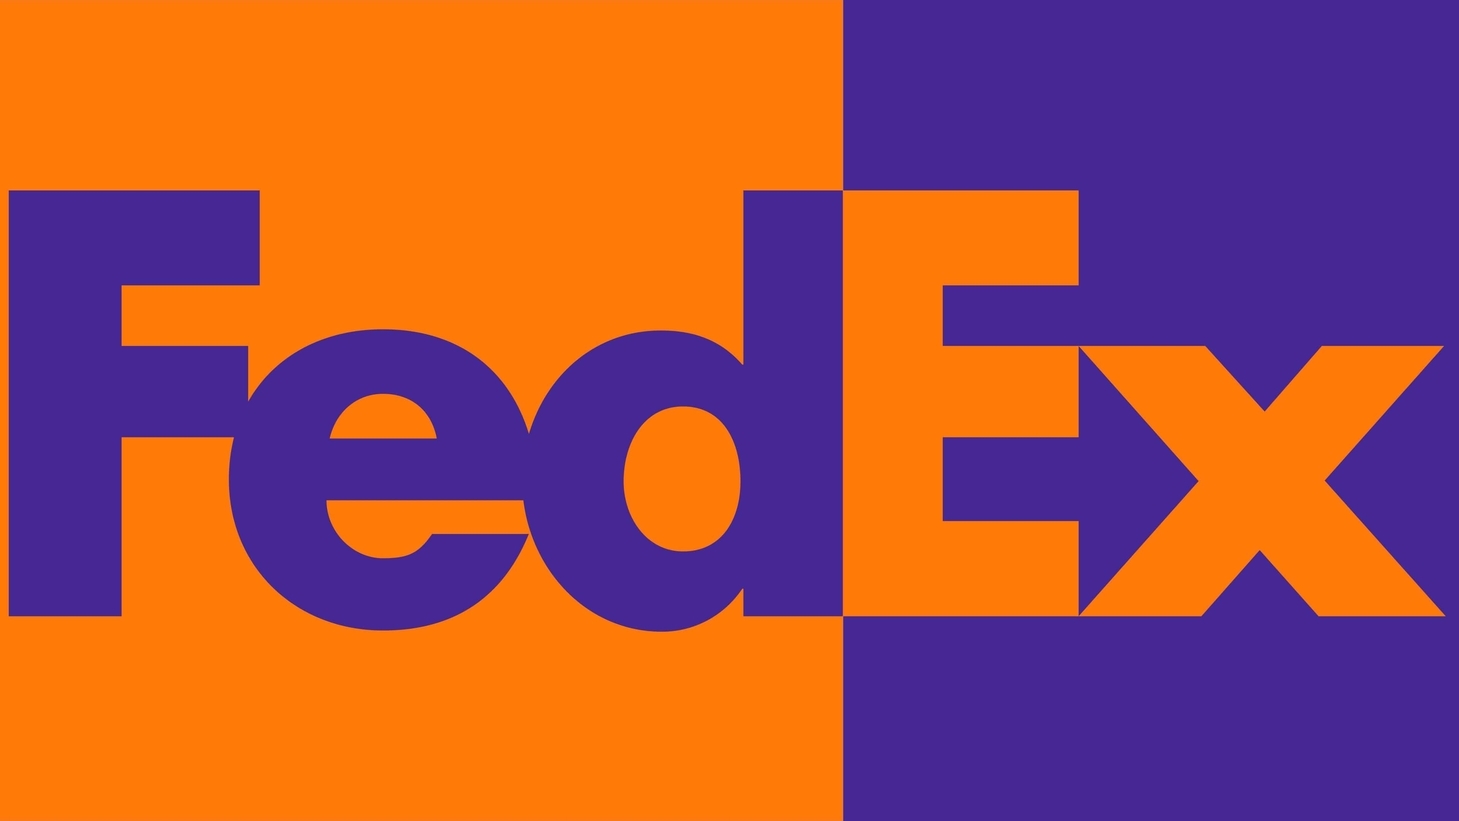 Fedex symbol